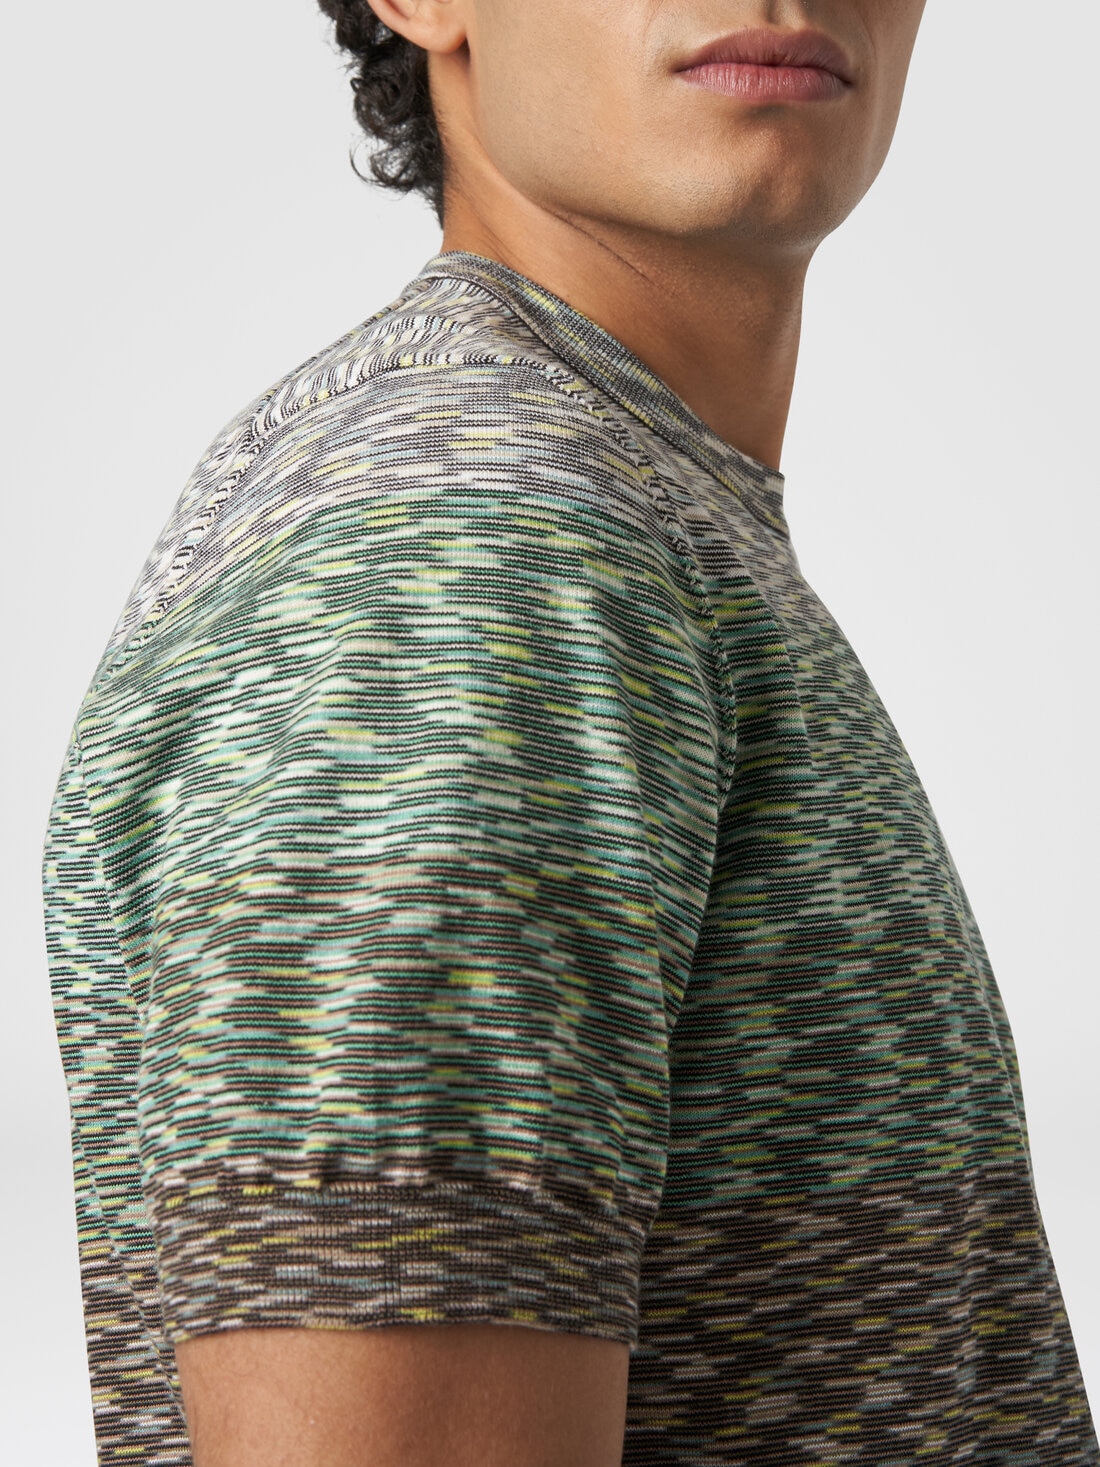 Rundhals-T-Shirt aus Baumwolle in Flammgarnoptik mit Dégradé-Effekt, Mehrfarbig  - US24SL0IBK012QS612U - 4